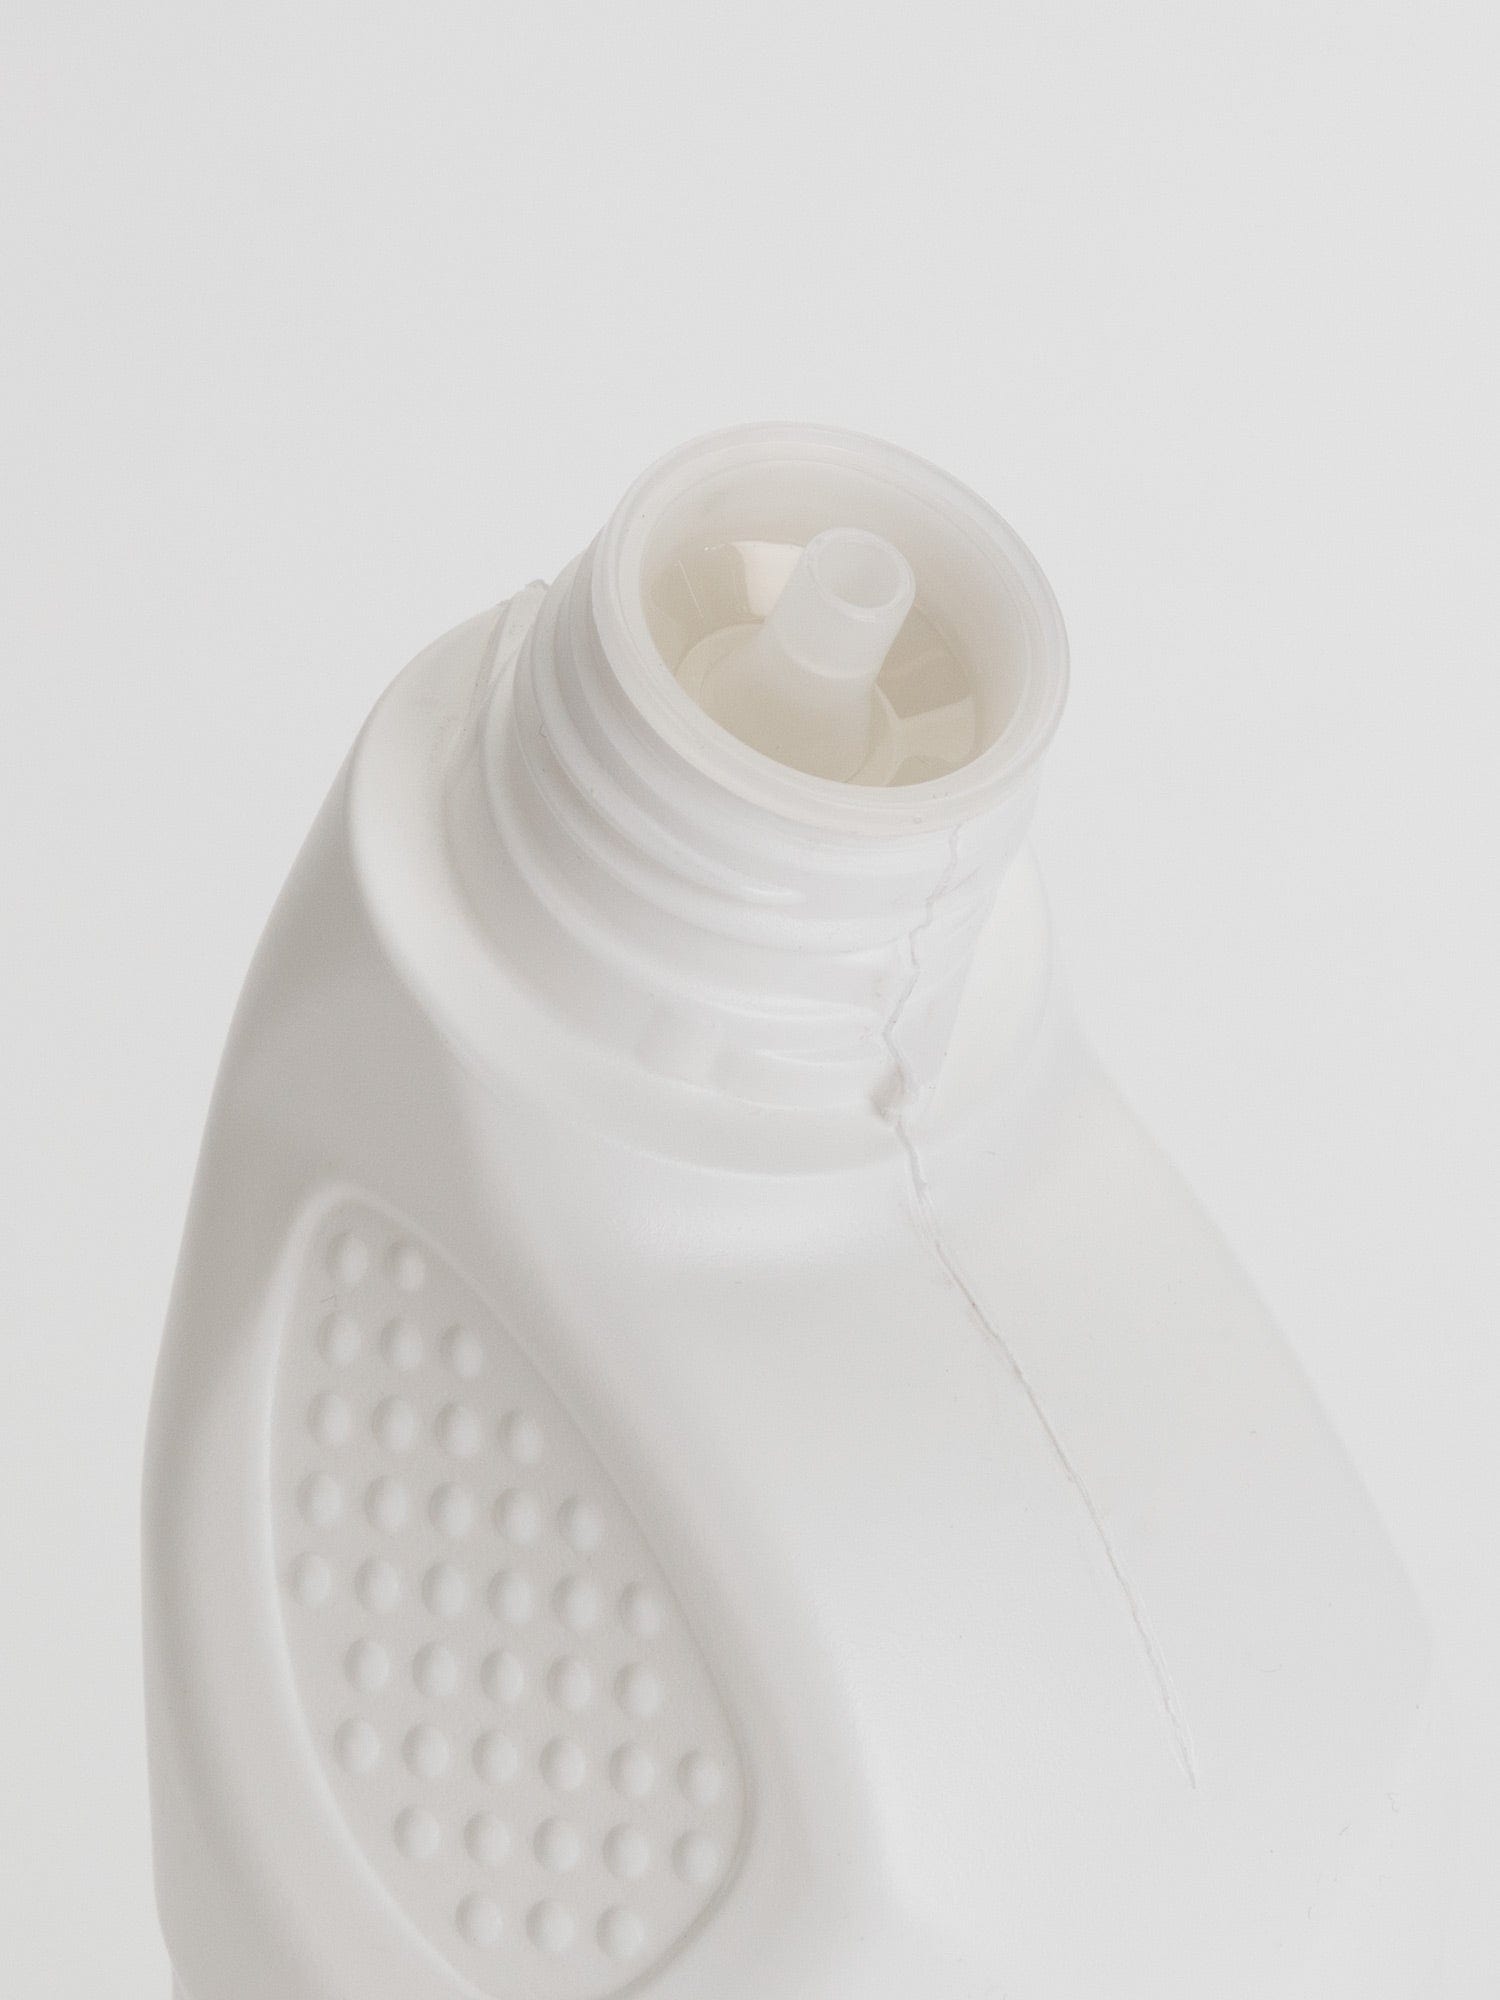 nozzle inside bottle cap toilet cleaner